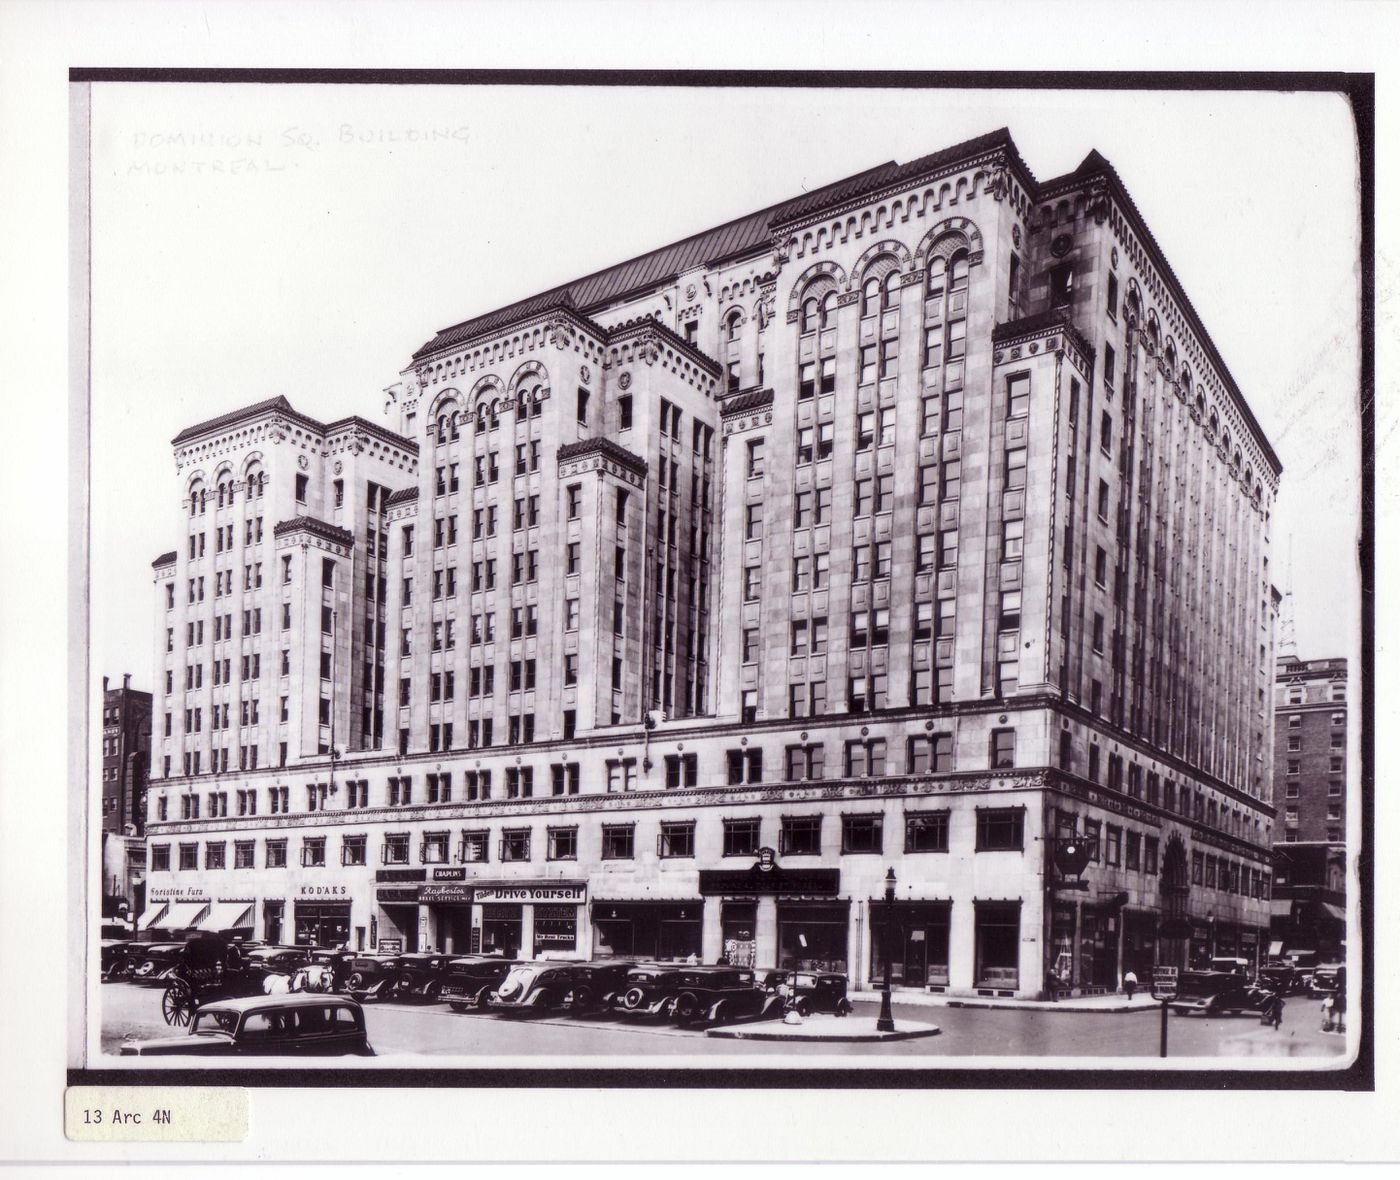 Dominion Square Building, Dominion Square and Metcalfe Street facades